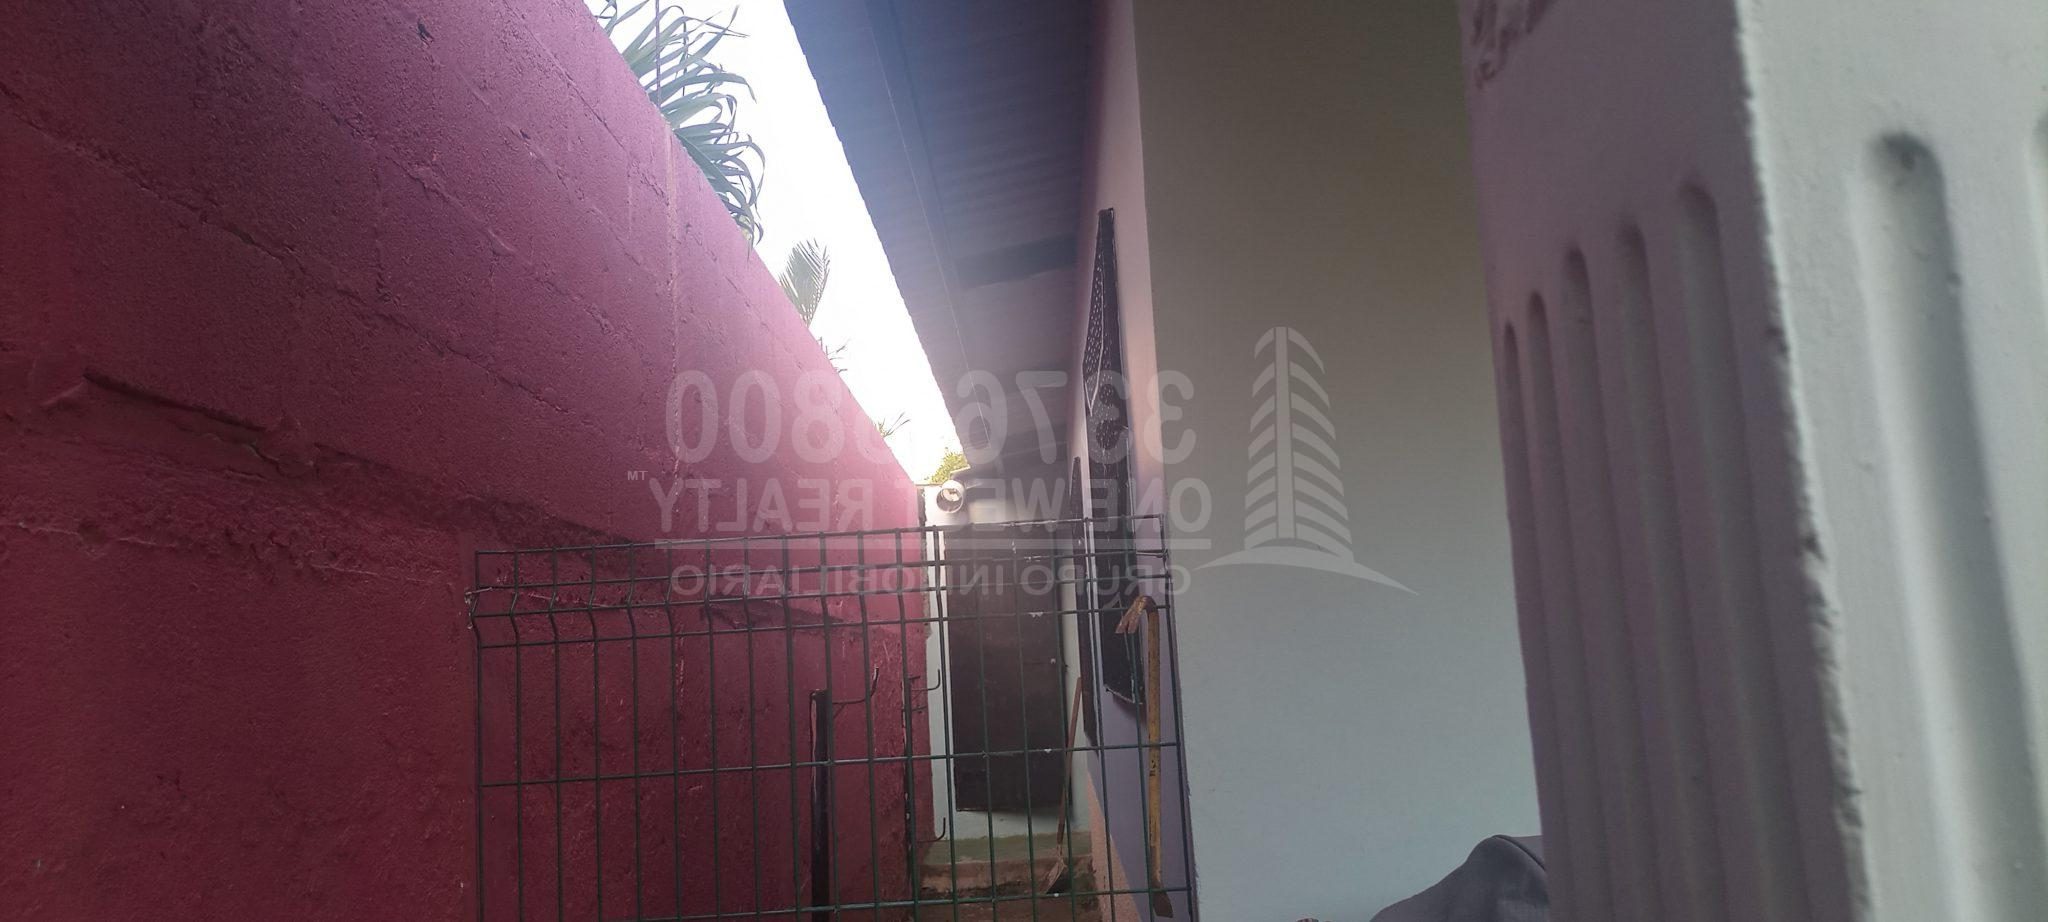 Casa en venta en Colonia La Sabana San Pedro Sula circuito cerrado